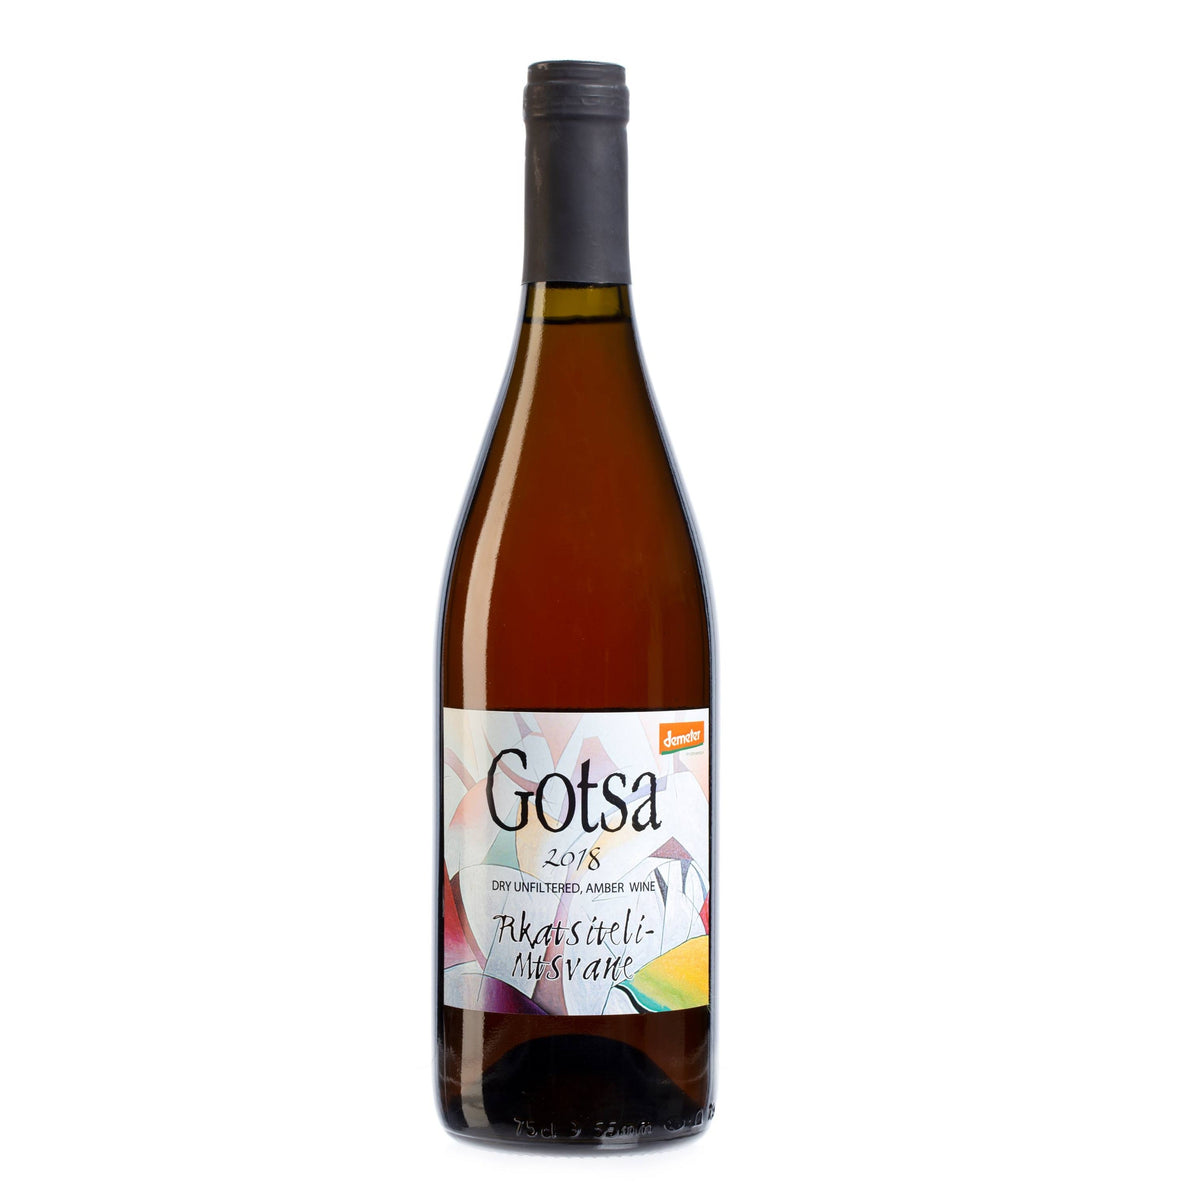 Rkatsiteli-Mtsvane 2018 - Orange - Gotsa Wines - Le vin dans les voiles